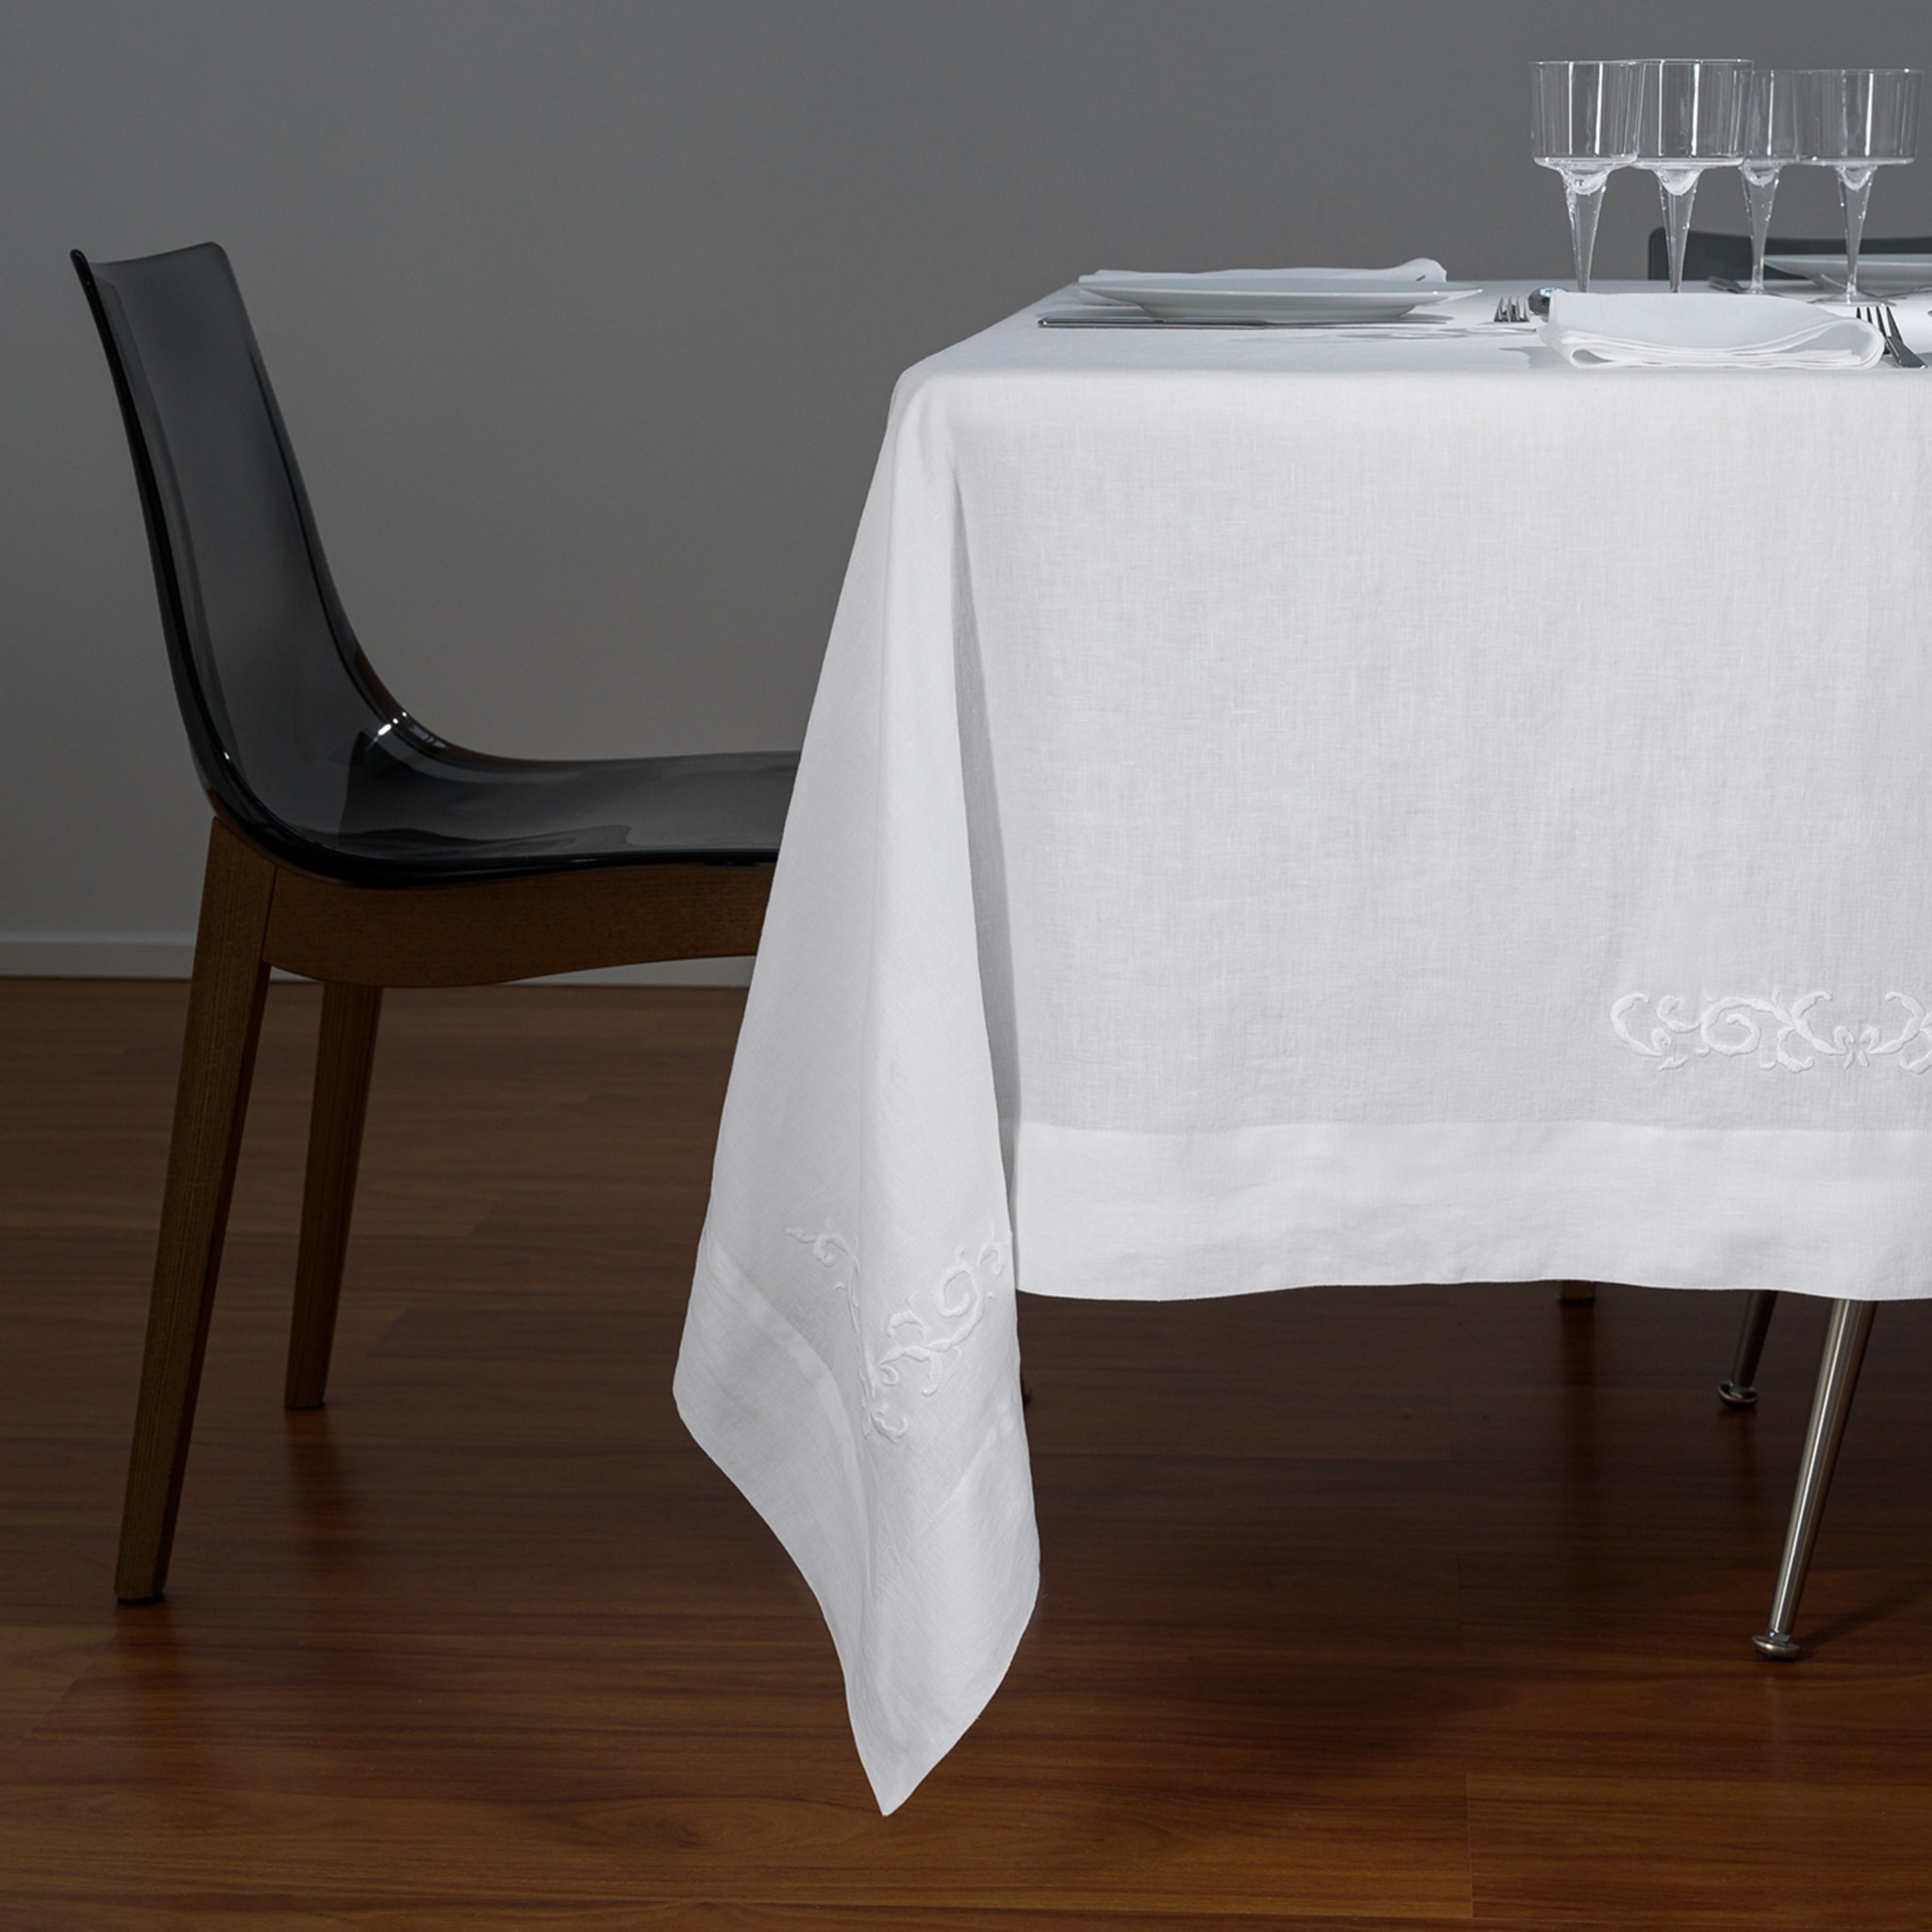 Decoro Embroidered White Tablecloth - Alternative view 4